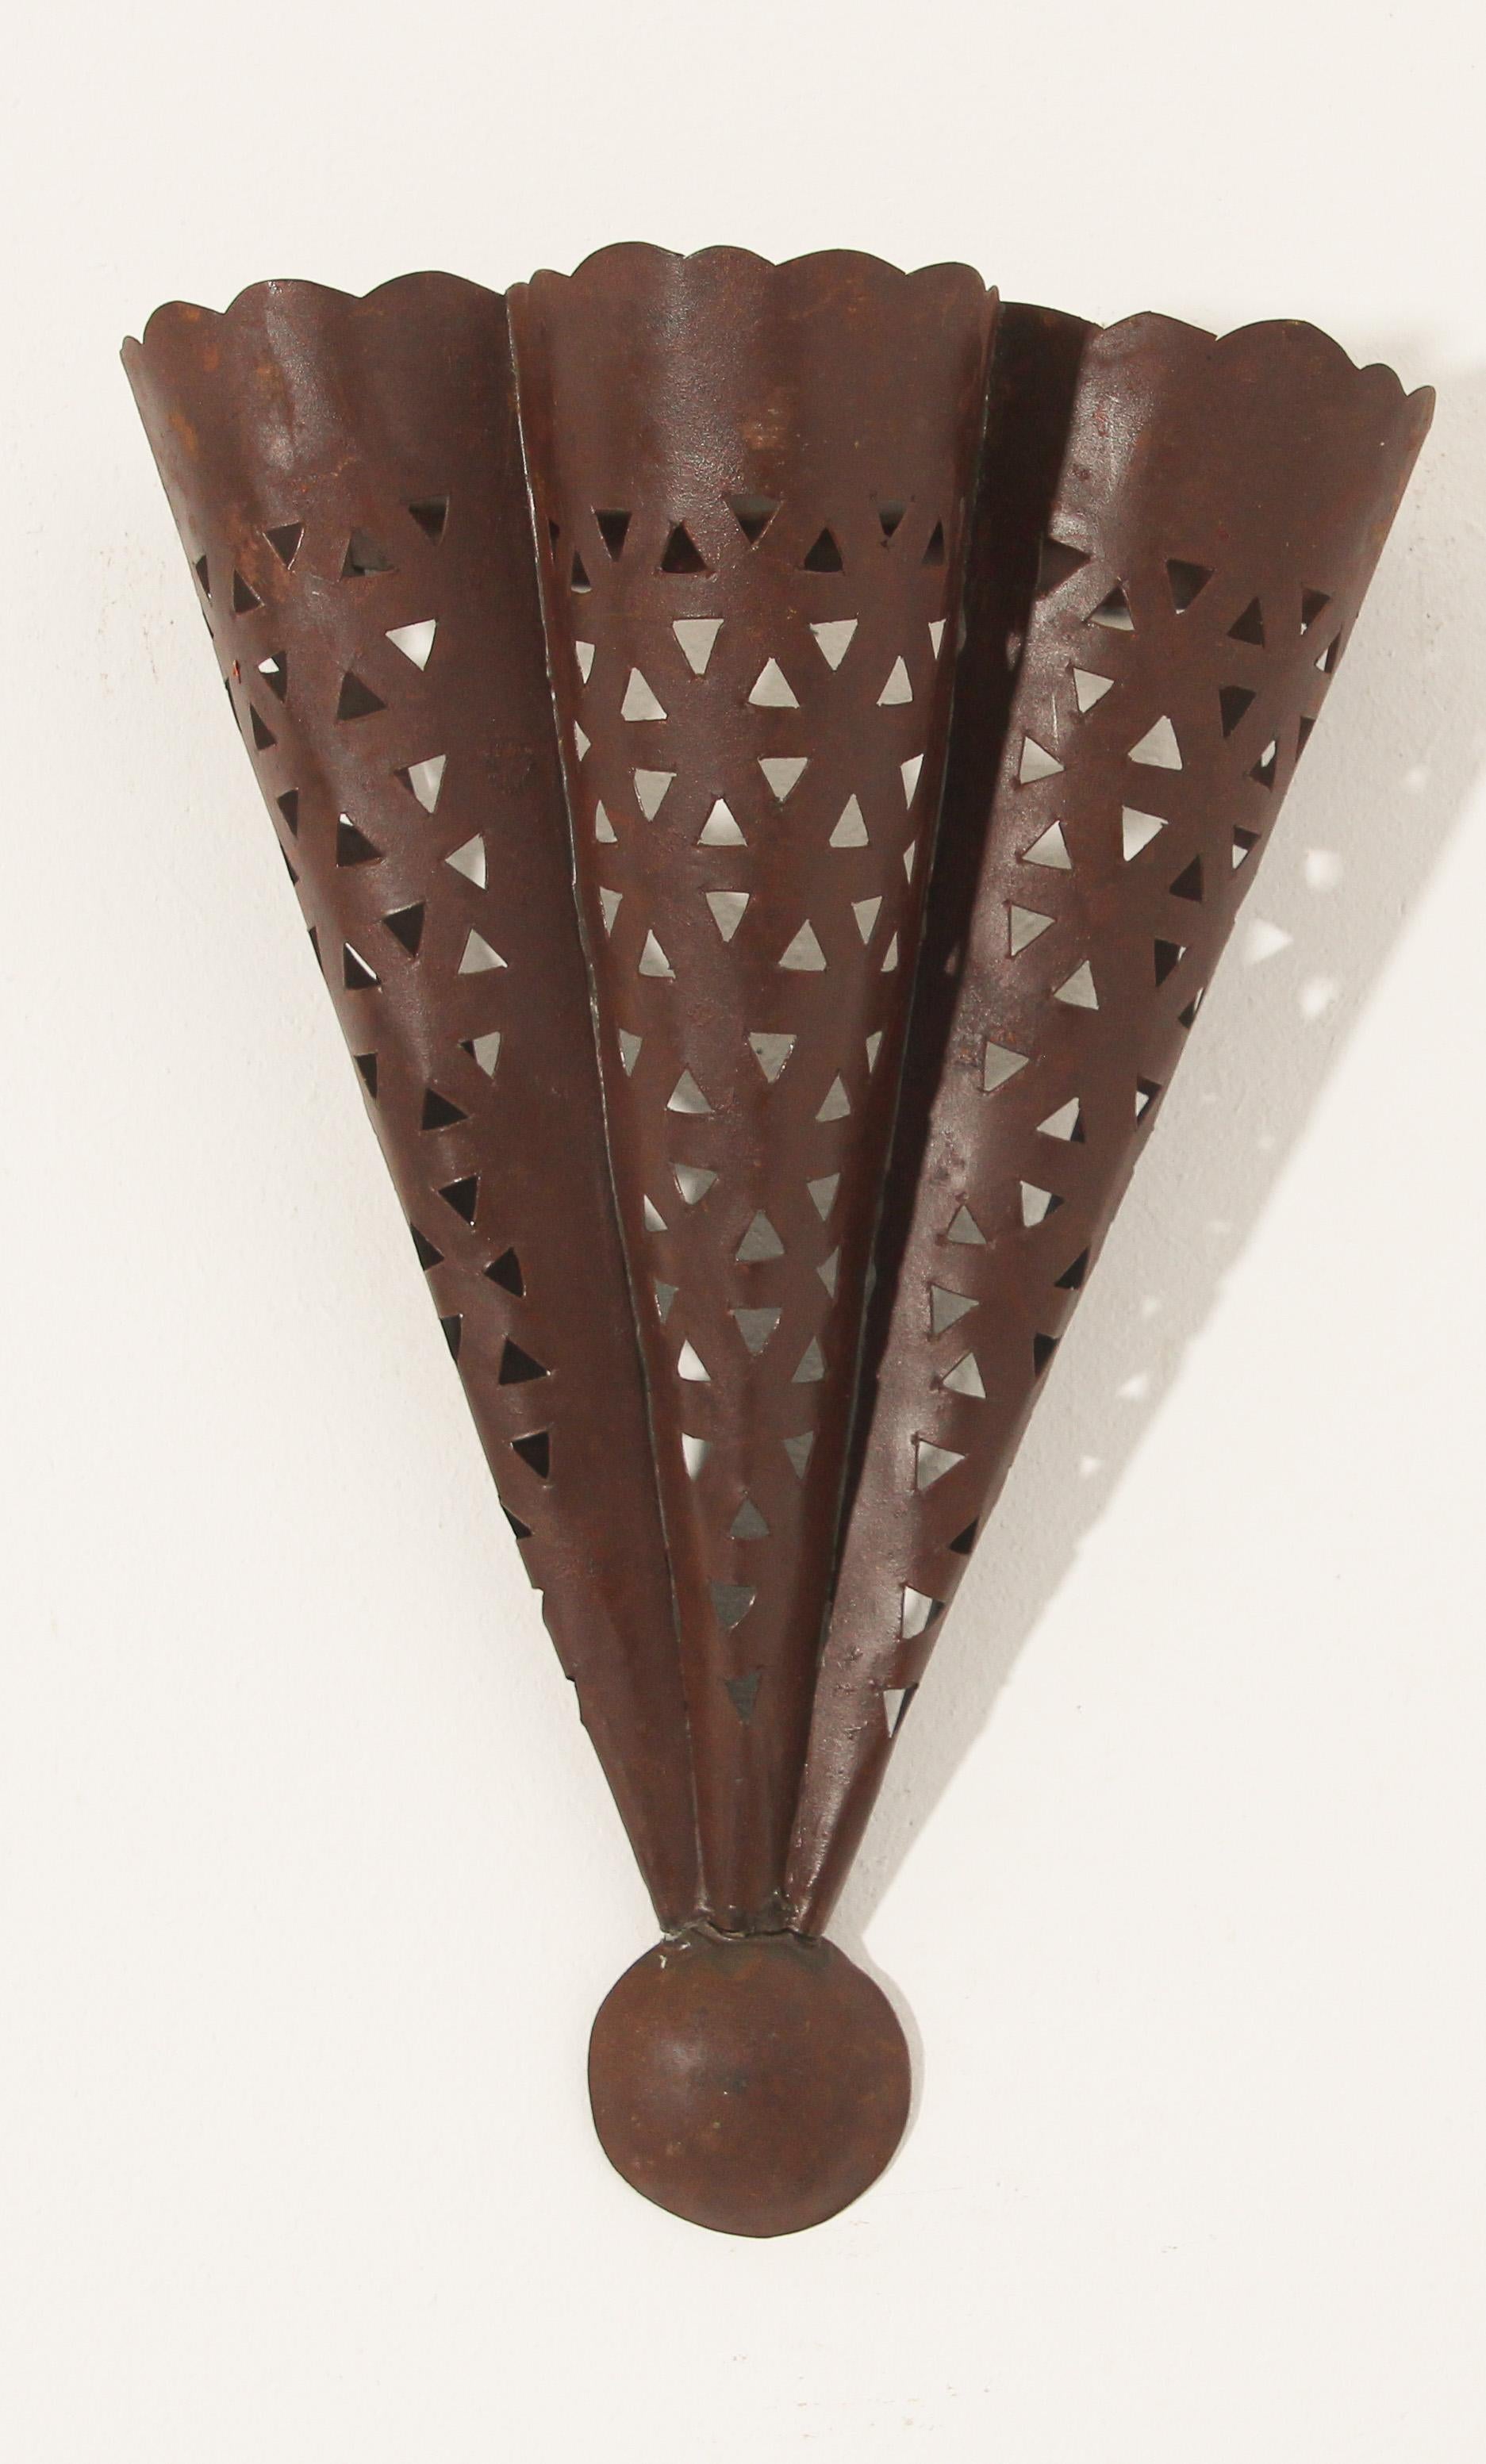 Abat-jour en métal de style marocain espagnol en forme de cône.
Abat-jour d'applique Hispano Moresque avec découpe.
Patine de finition rouille foncée,
A utiliser à l'intérieur ou à l'extérieur.
Non raccordé à l'électricité, ombrage